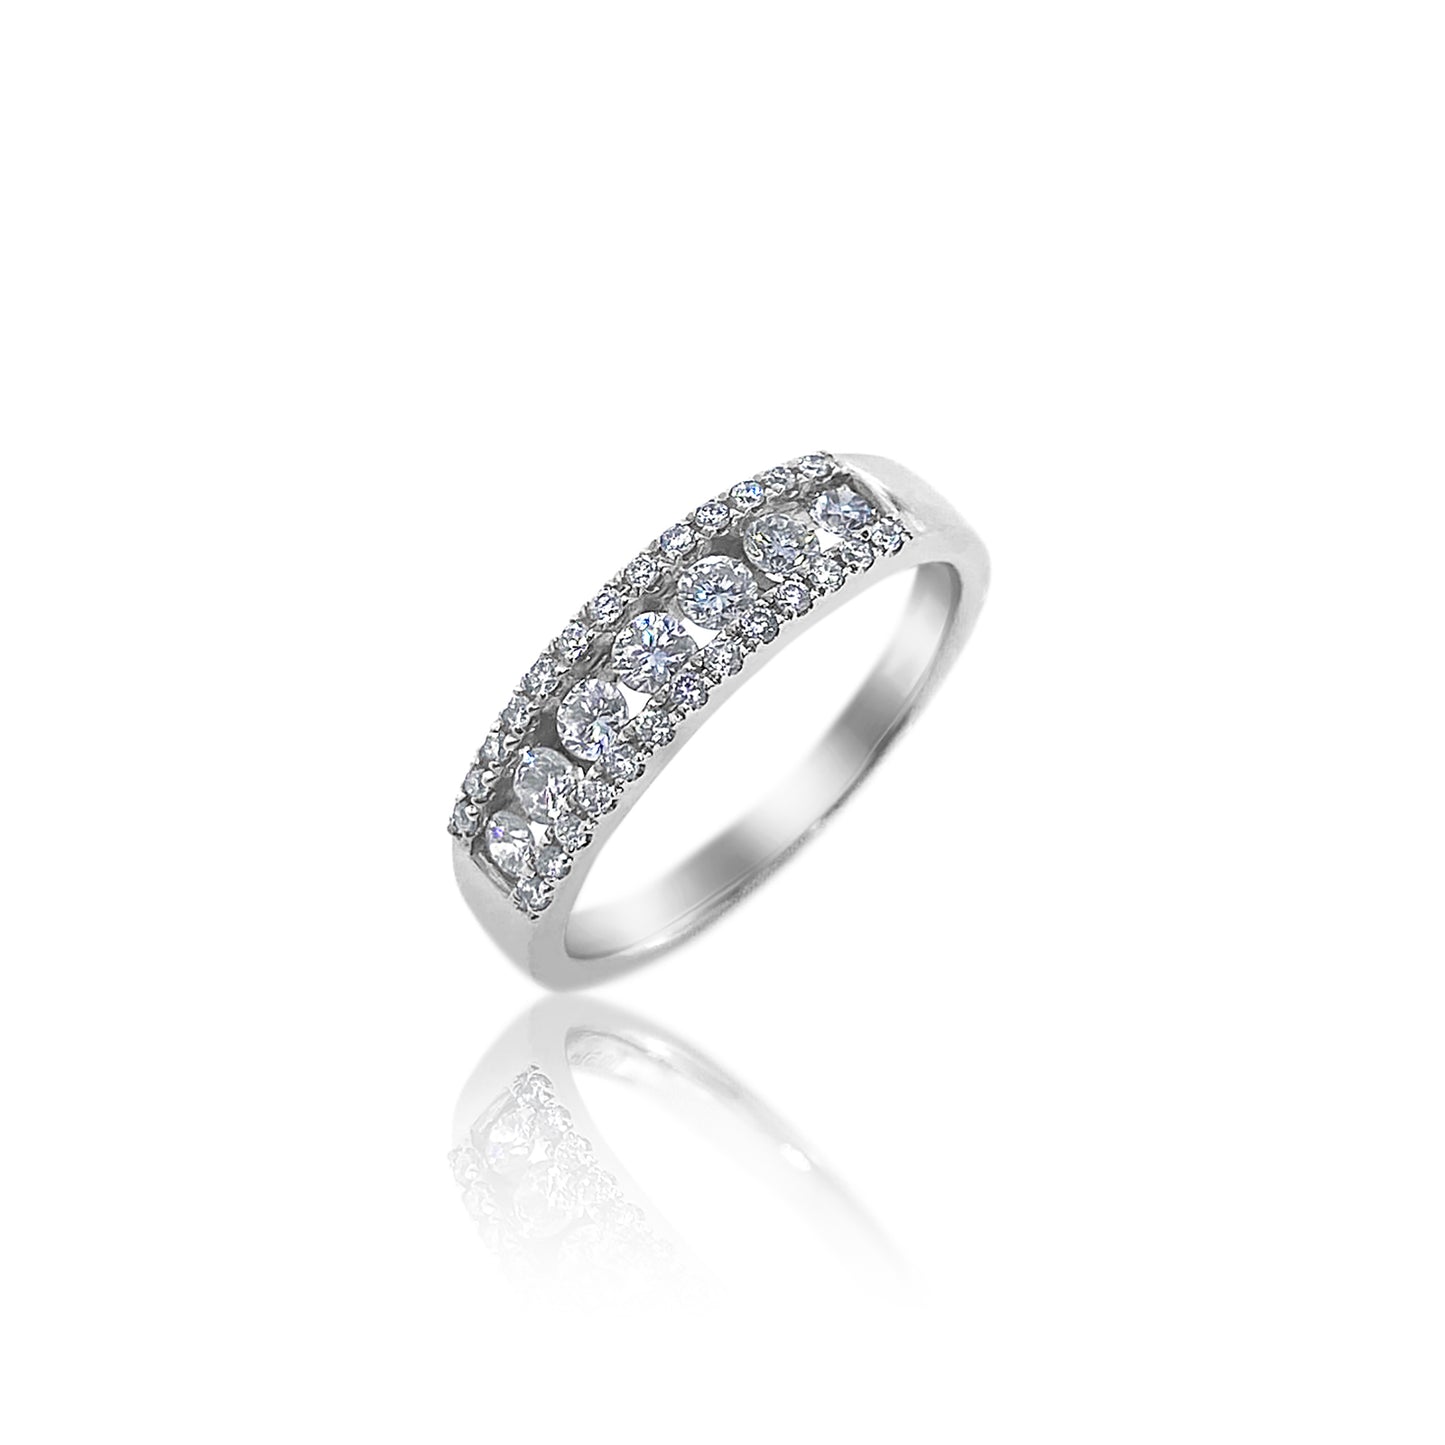 San Antonio Jewelry 18k white gold diamond ring. 